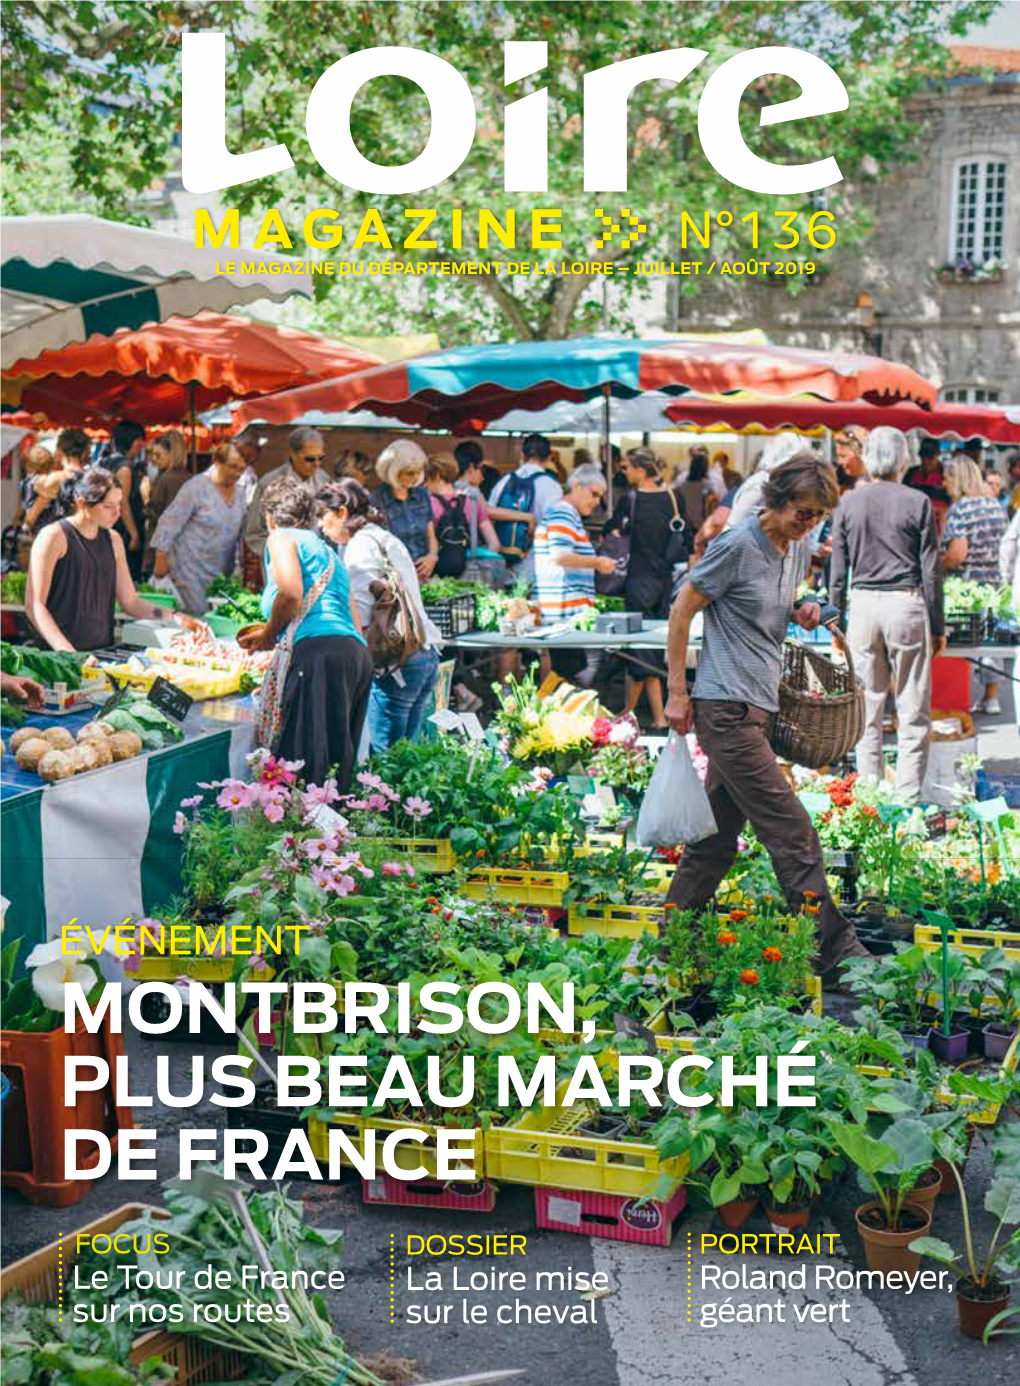 Montbrison, Plus Beau Marché De France